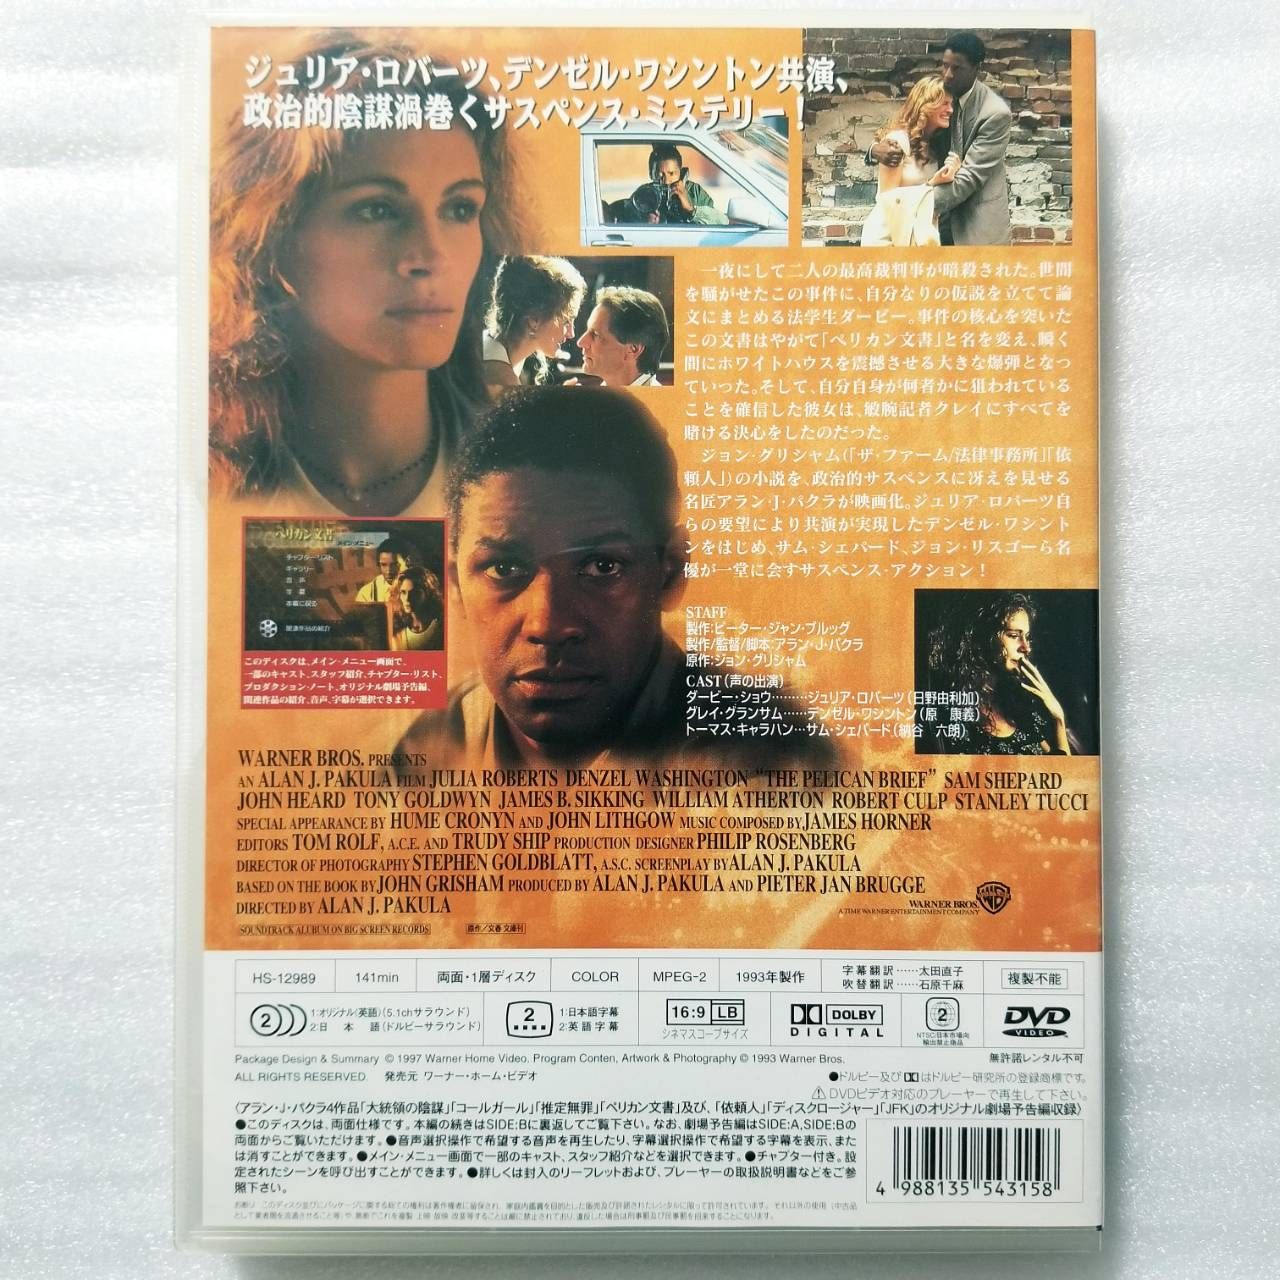 VHS ジュリア·ロバーツ 映画「ペリカン文書」-